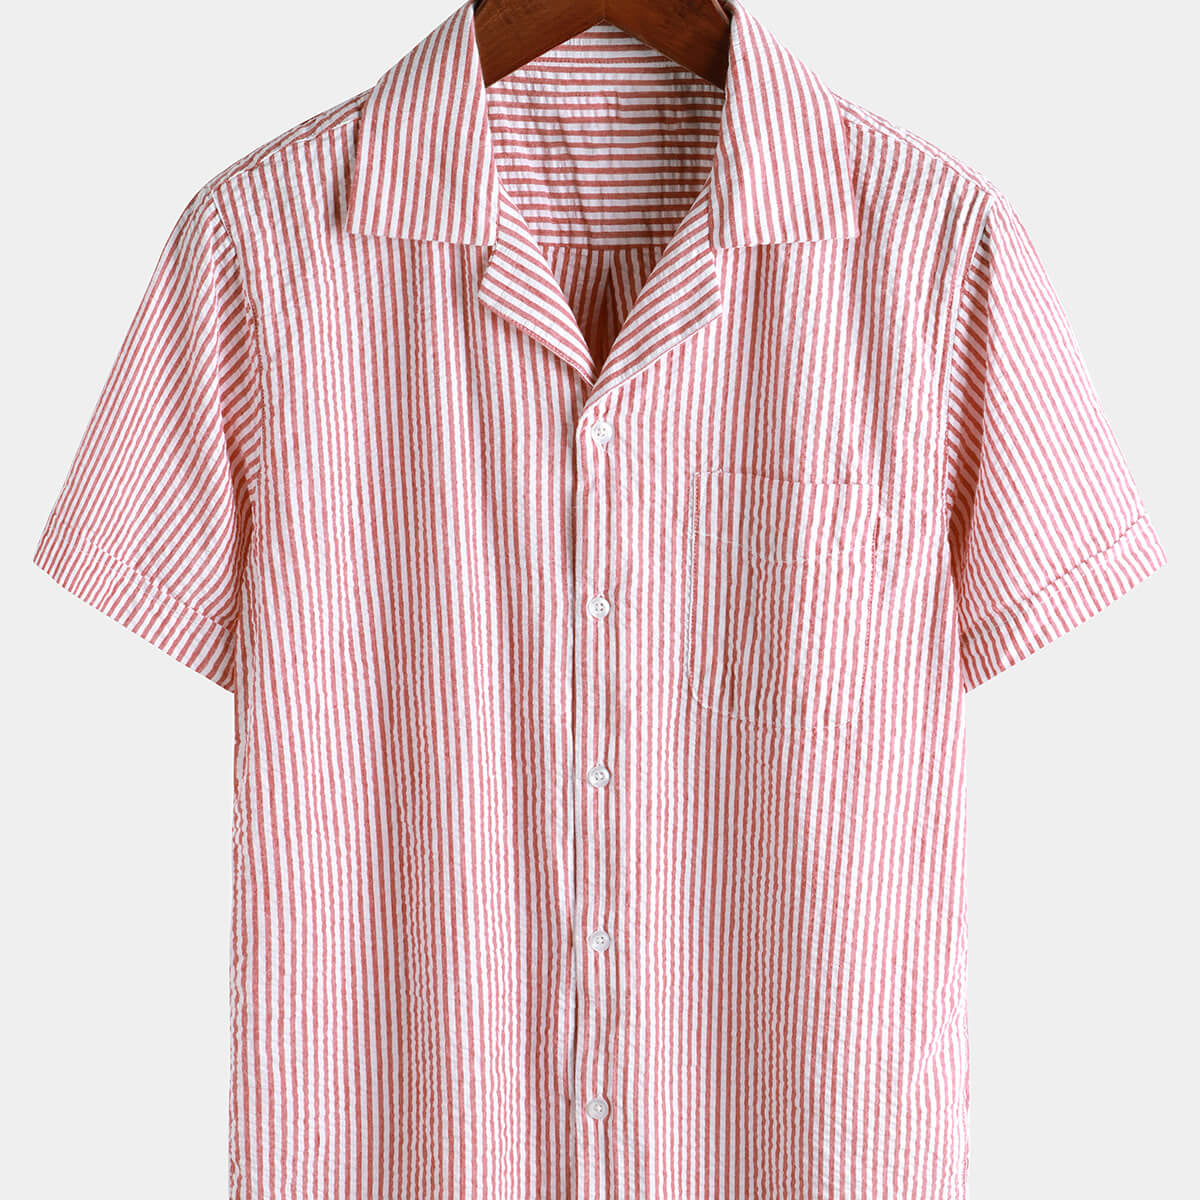 Camisa de playa de manga corta para campamento con cuello cubano de verano con botones de algodón a rayas transpirable para hombre